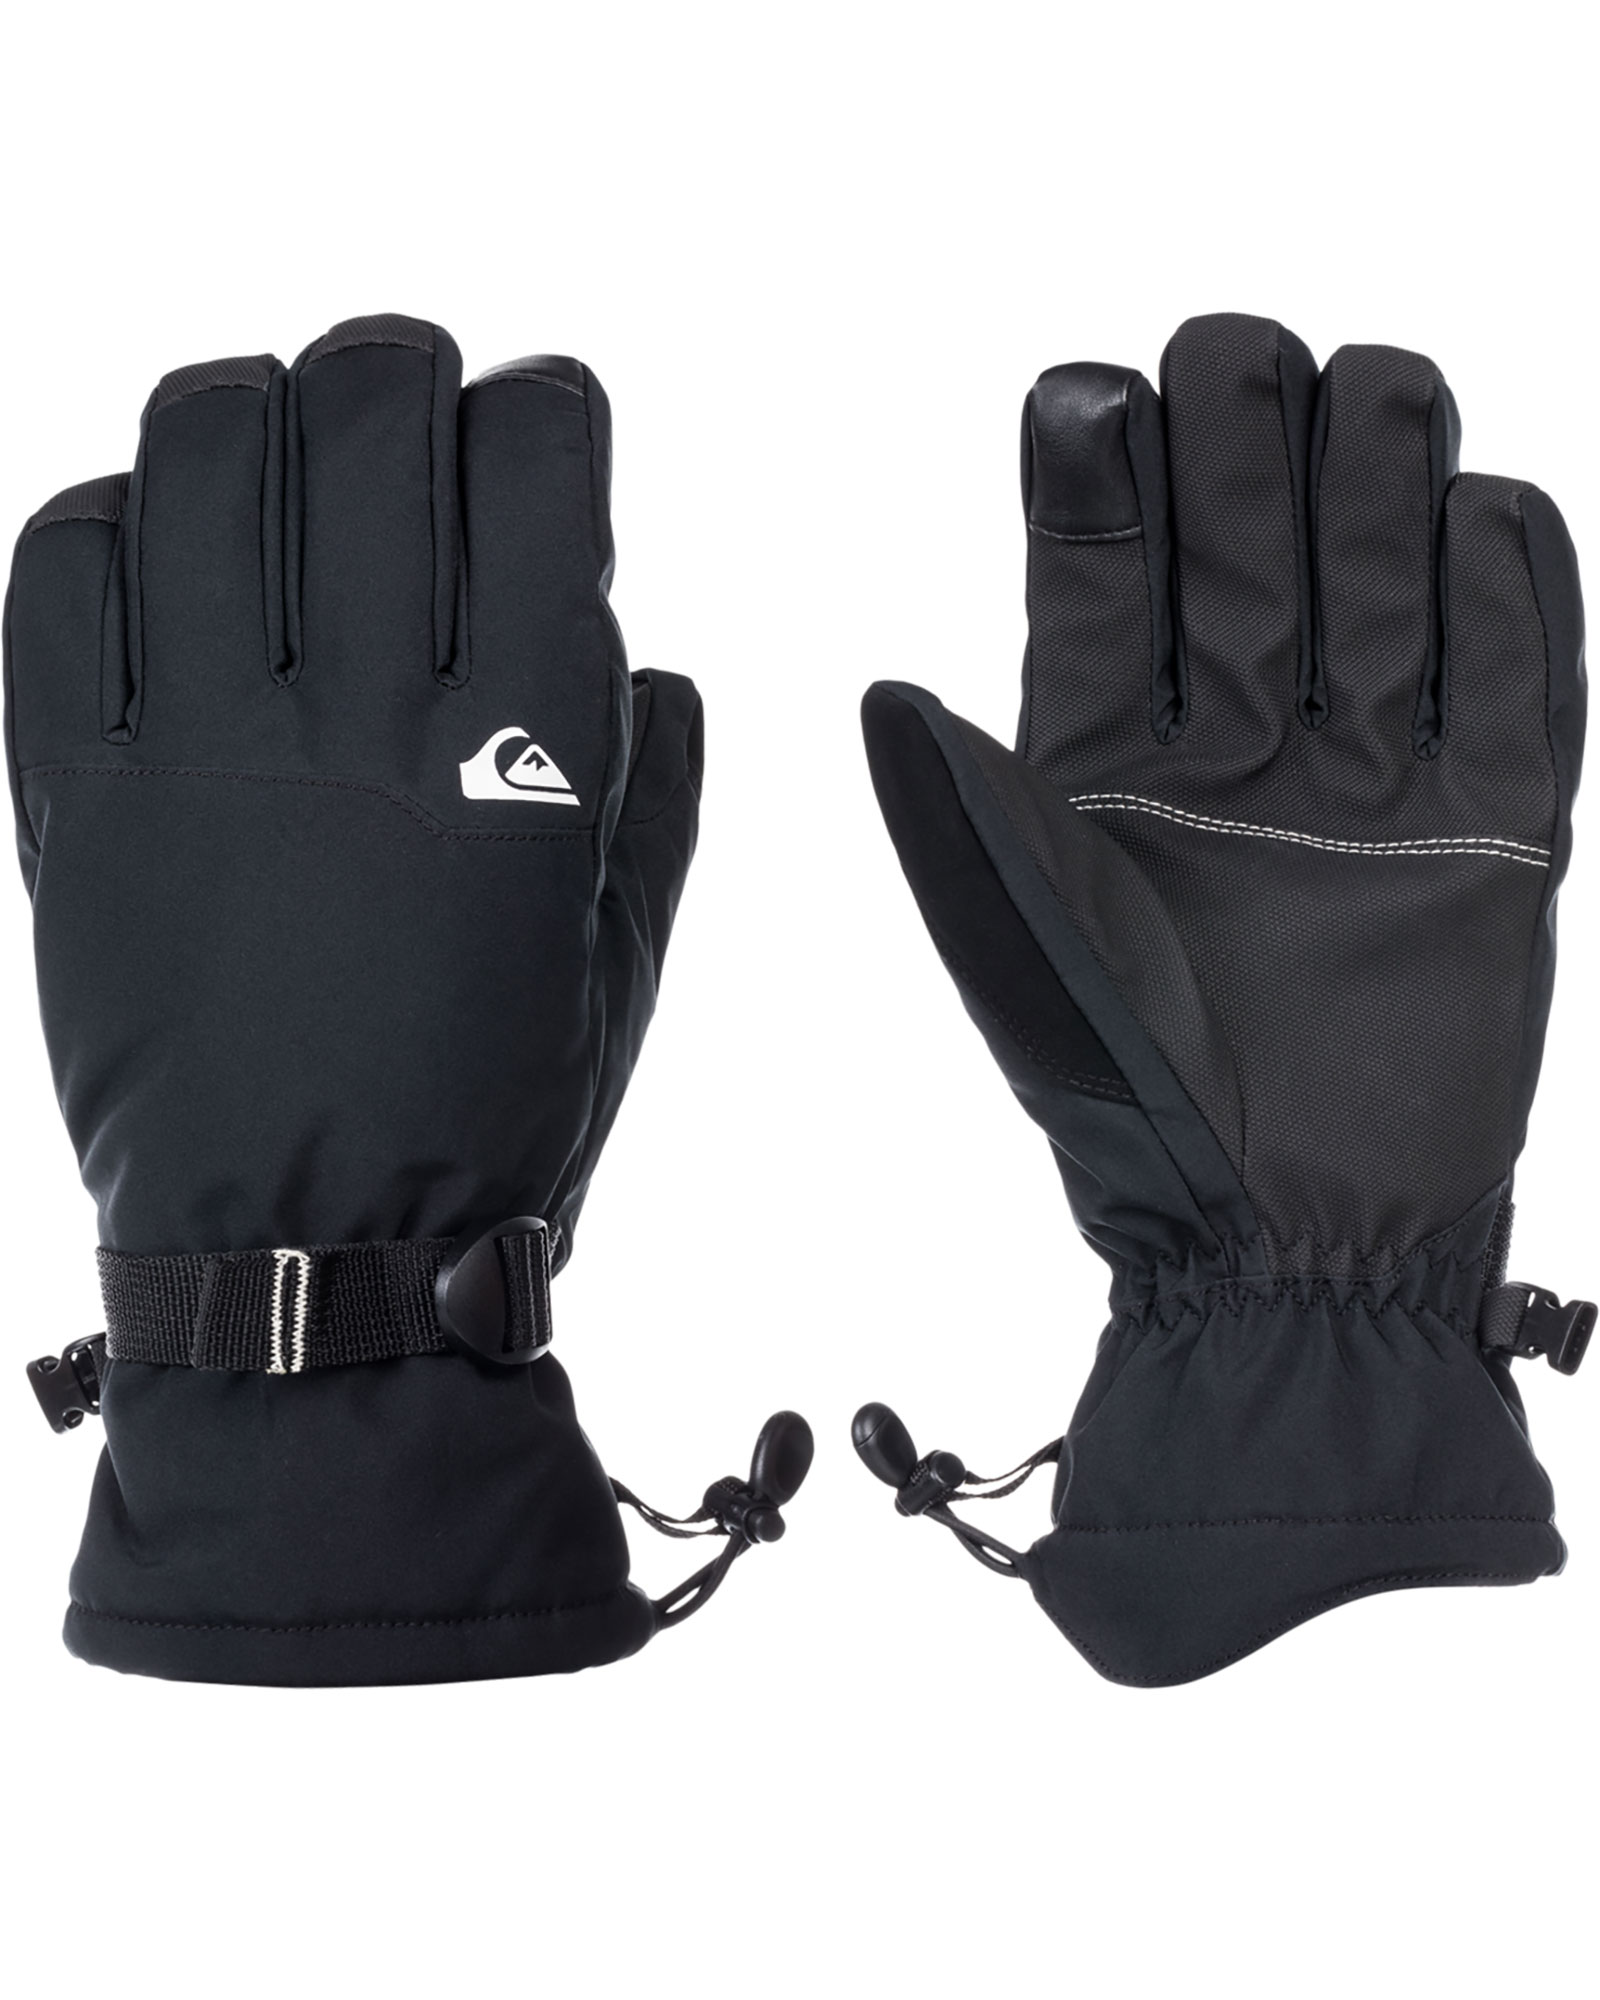 Quiksilver Mission Men’s Gloves - True Black S